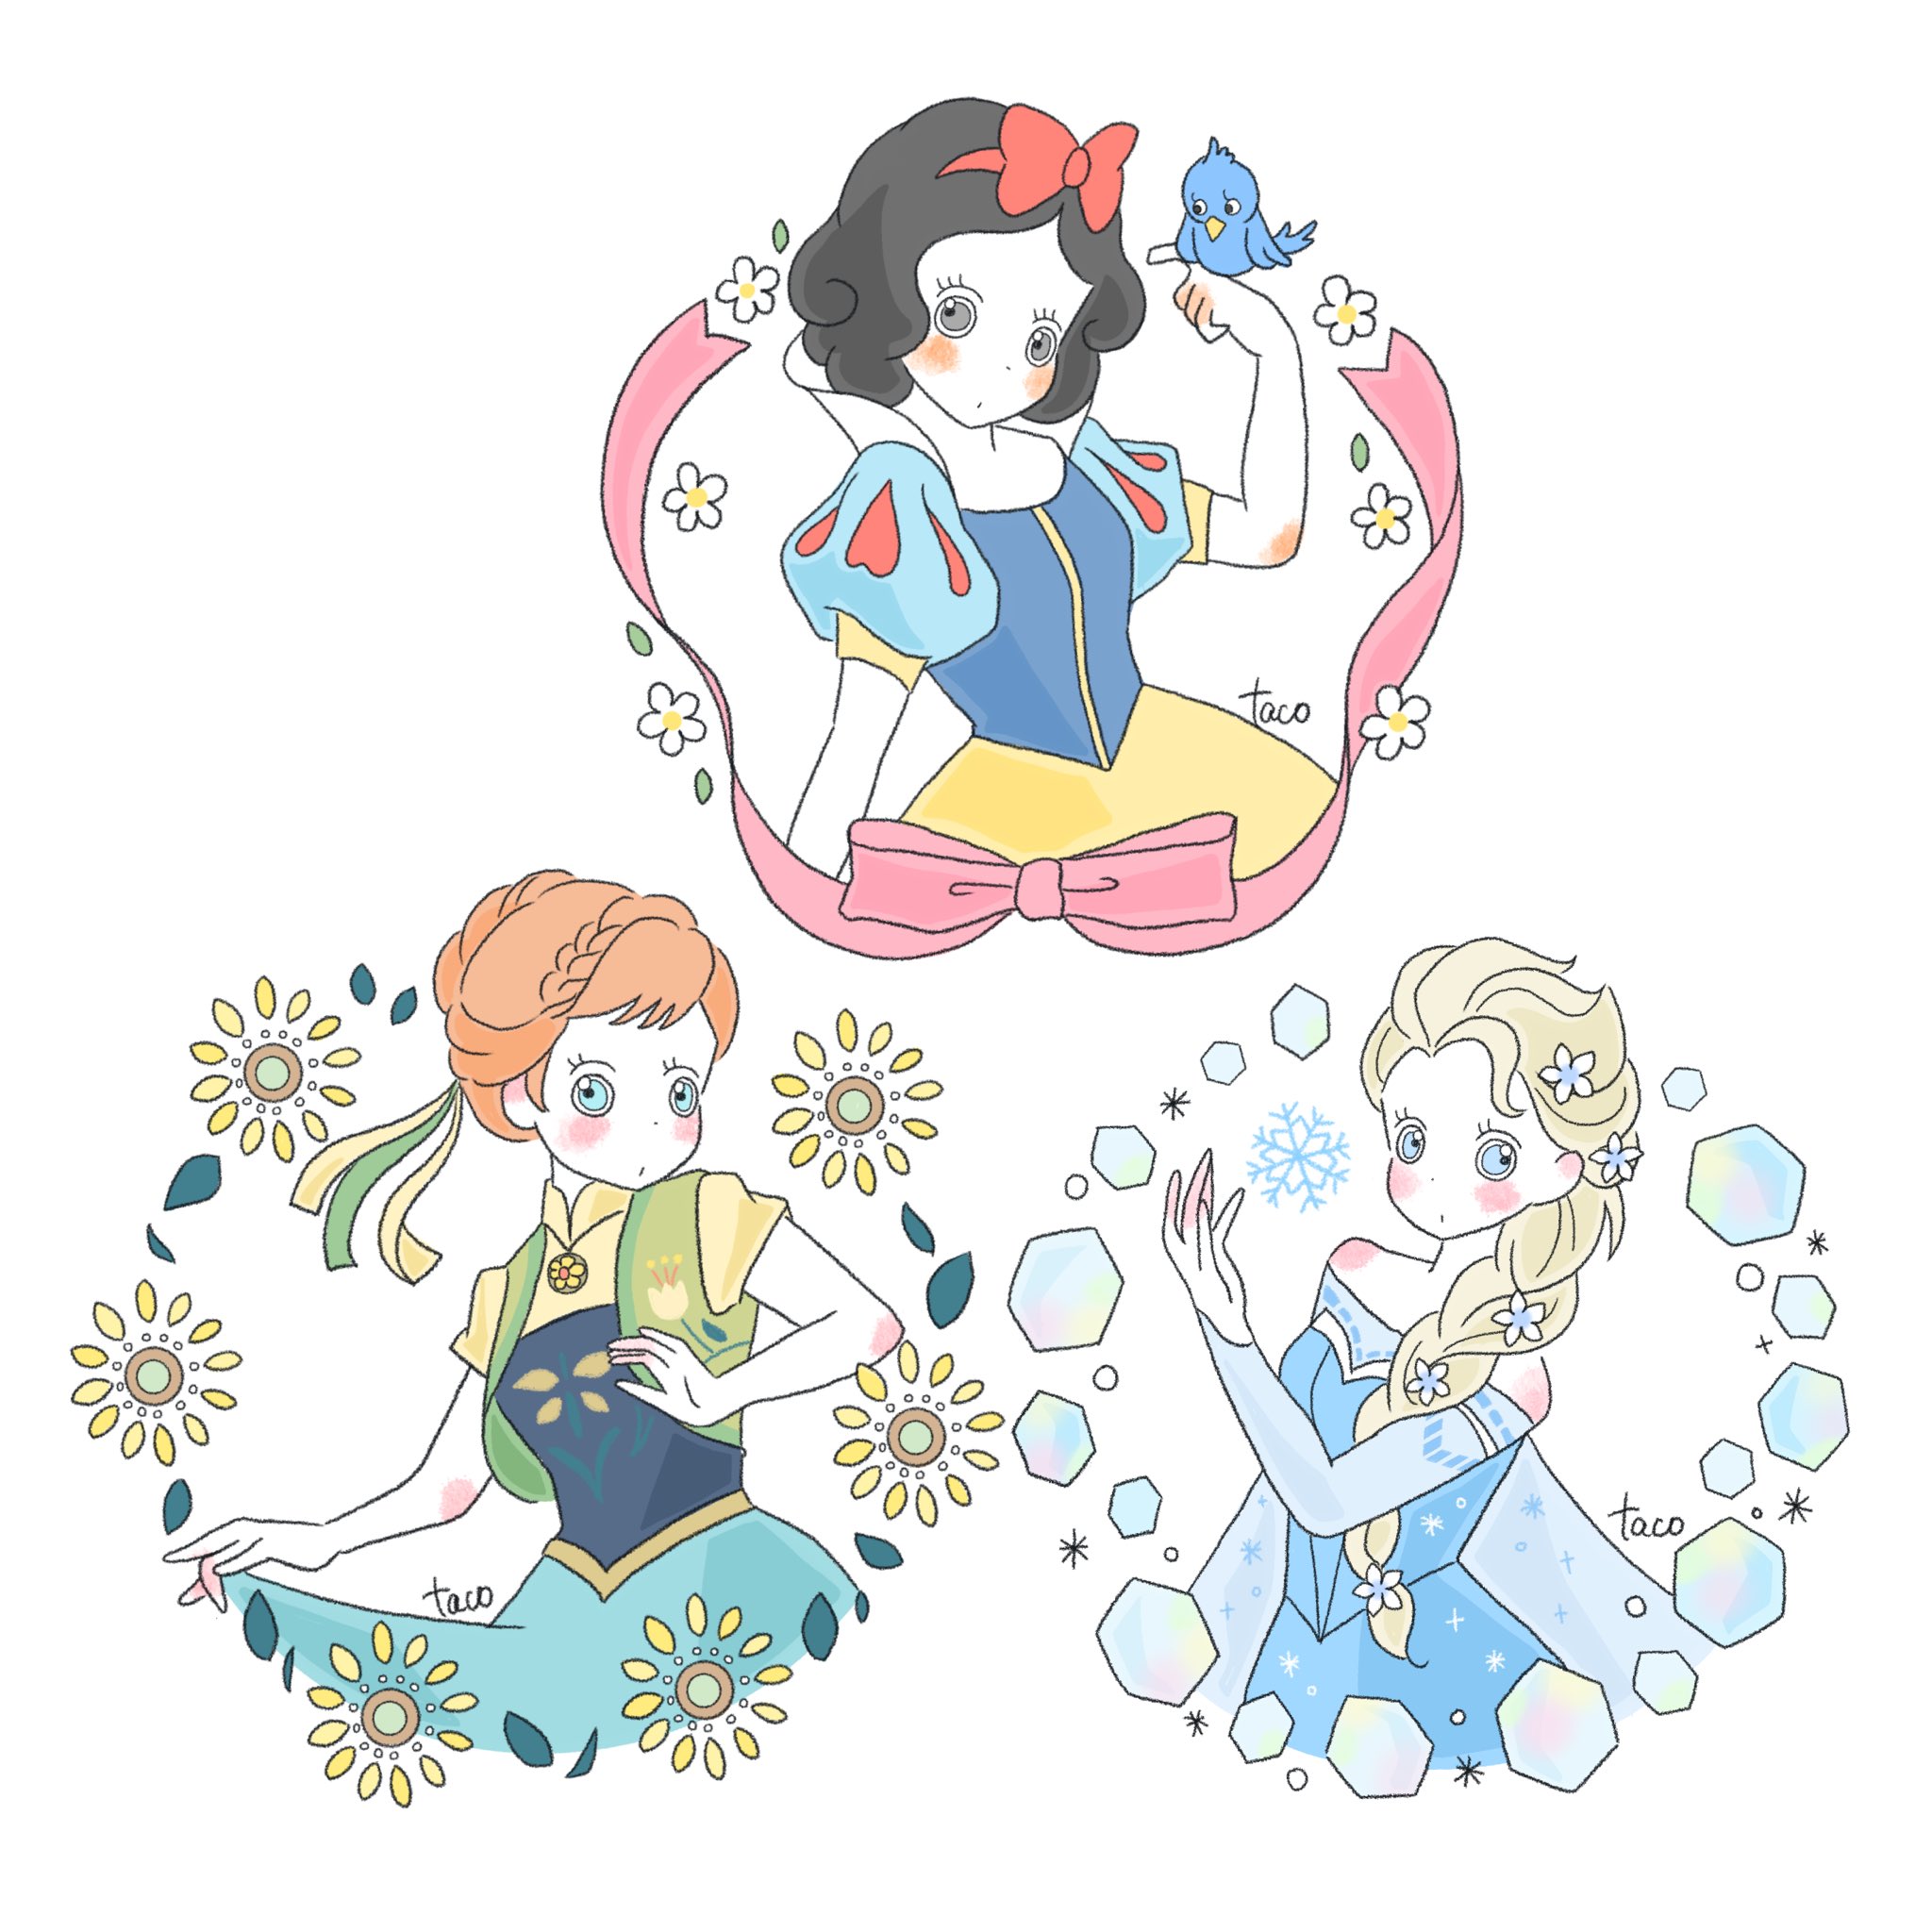 Tacomaru イラスト アイコンにどうぞシリーズ アナ雪 アナと雪の女王 Frozen アナ エルサ Snowwhite 白雪姫 女の子イラスト ゆるいイラスト いらすと いらすとぐらむ イラスト好きな人と繋がりたい イラスト好き Disney